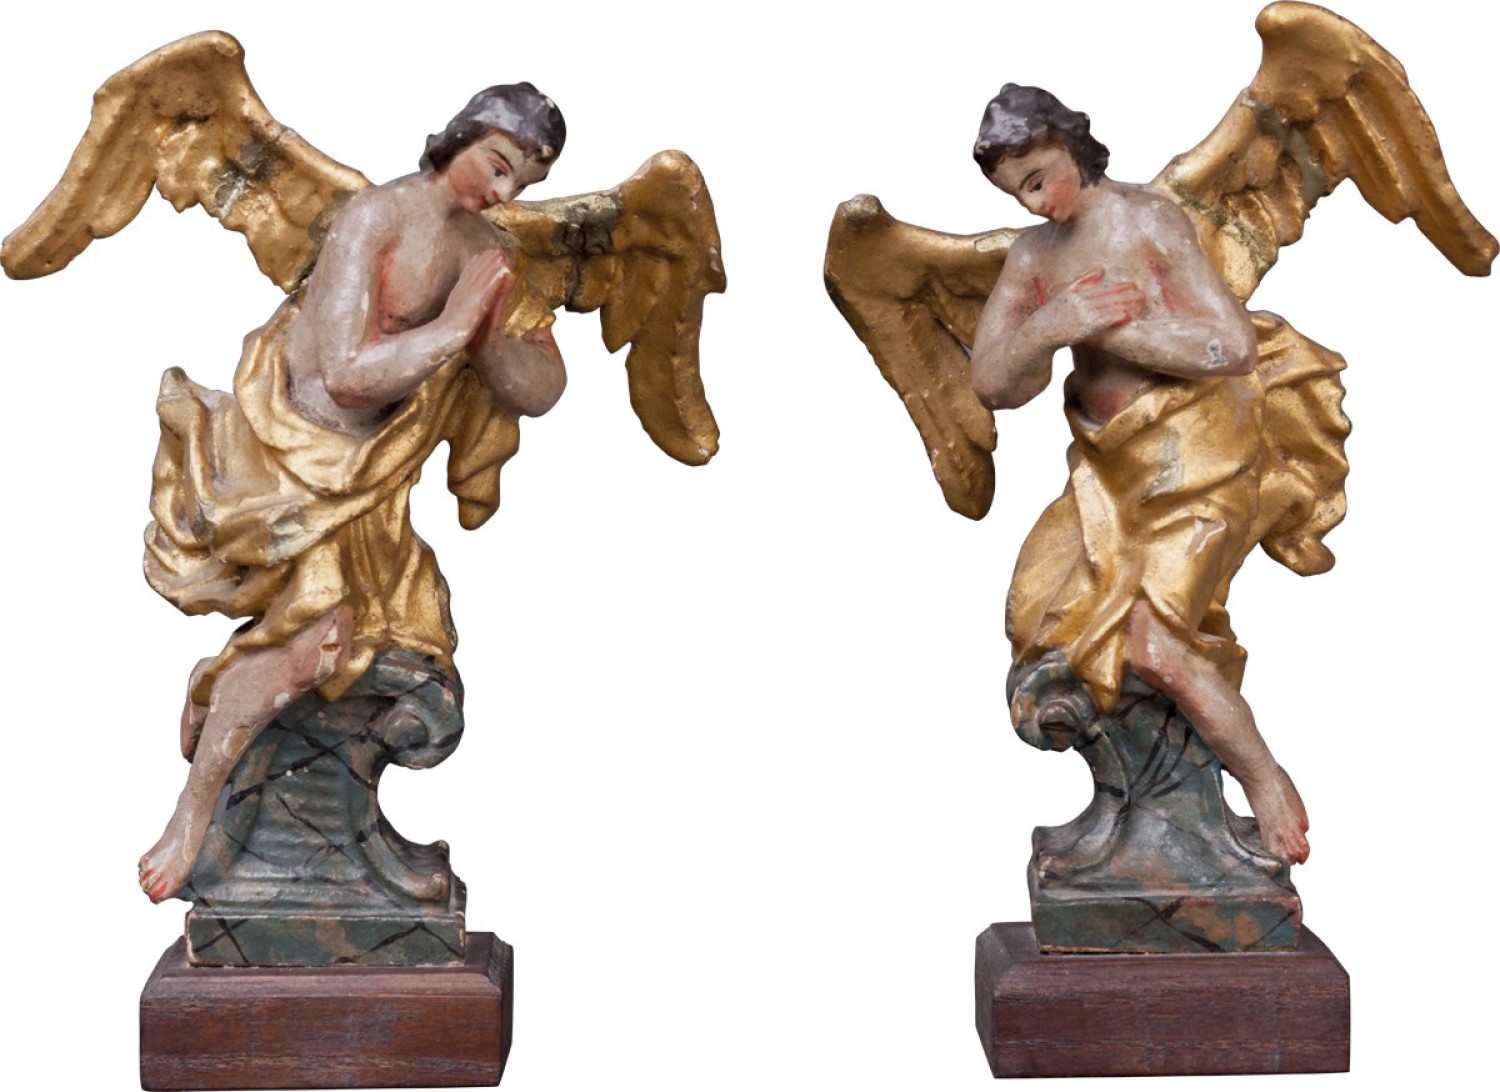 Modeletta dvou andělů, střední Evropa, kolem r. 1750 polychromované dřevo, výška 16,5 cm (včetně podstavce) vyvolávací cena: 20 000 Kč (+ 20% provize) Sýpka, 14. 4. 2019